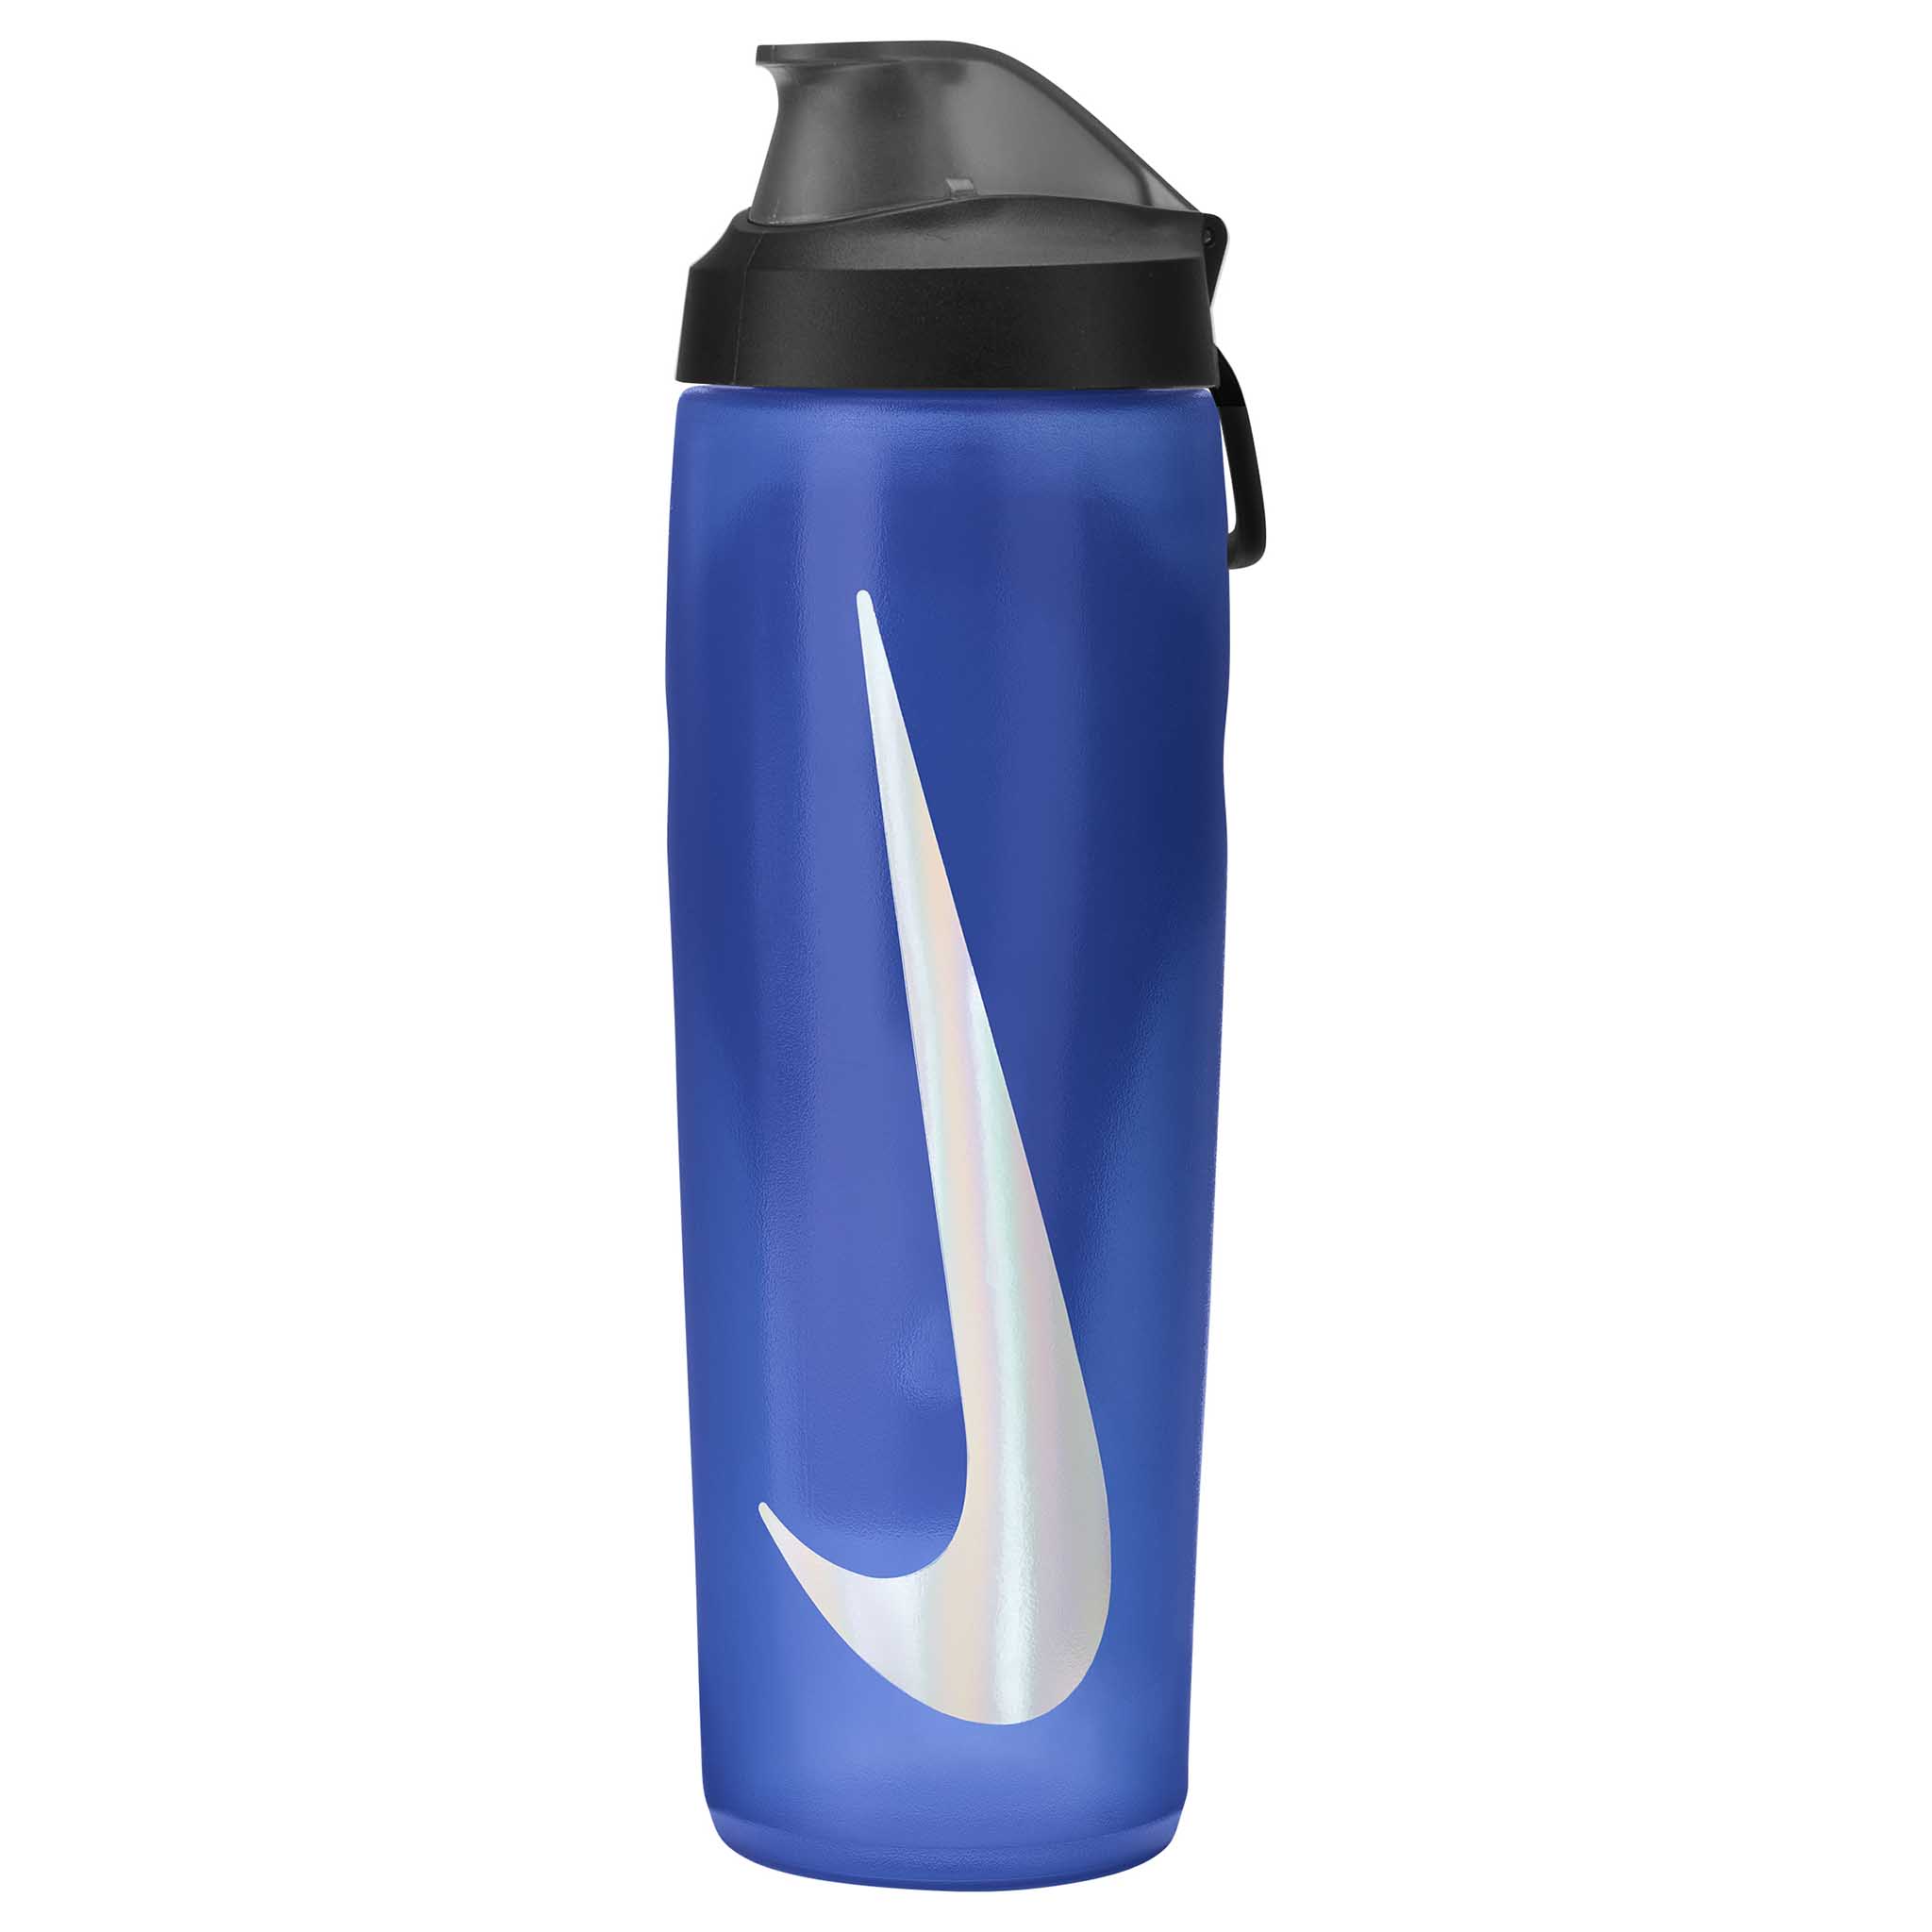 Nike Refuel Locking Lid 24 oz. Water Bottle - Blue